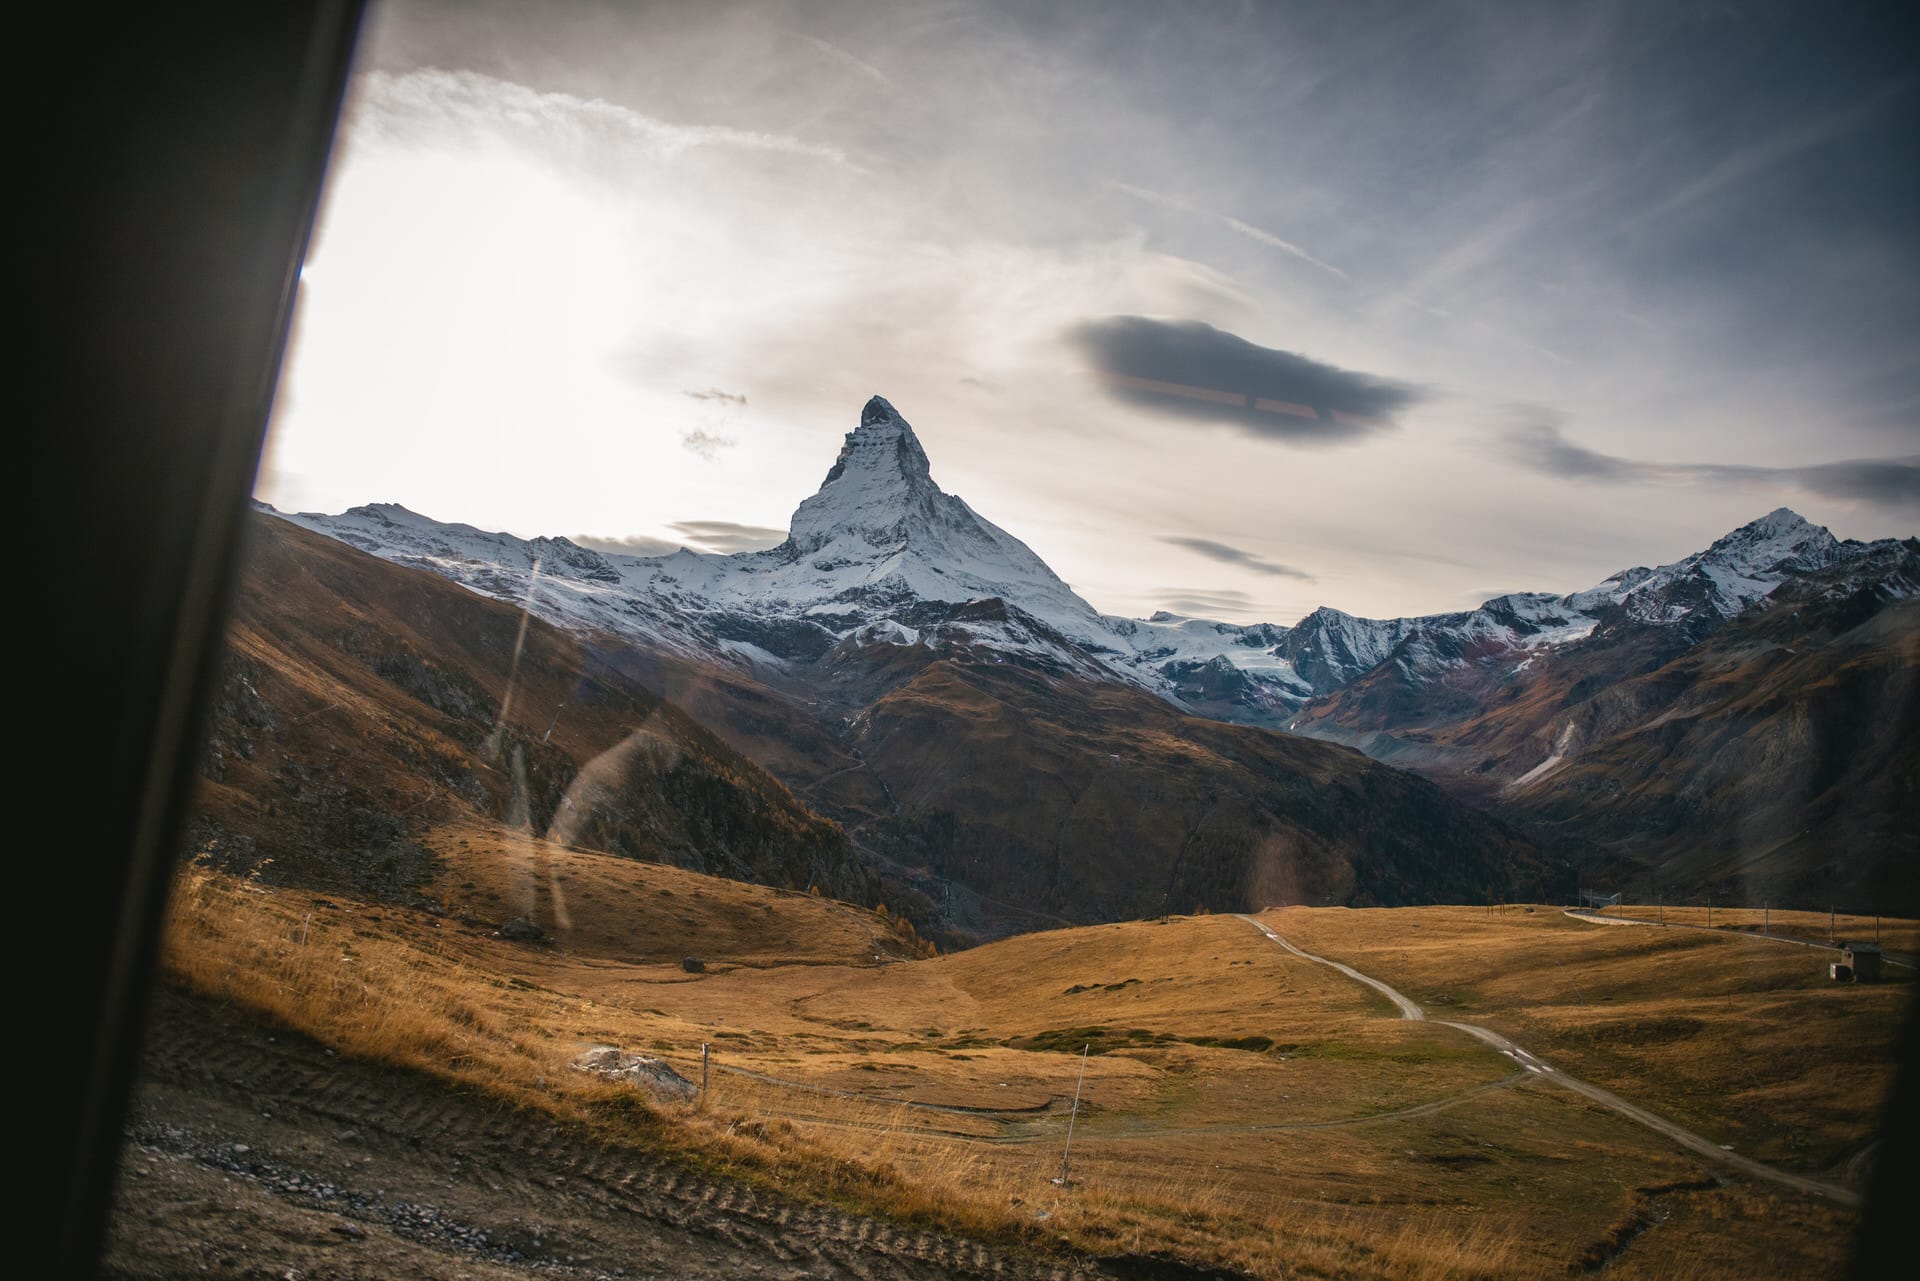 The Matterhorn viewed from ther Gornergratbahn